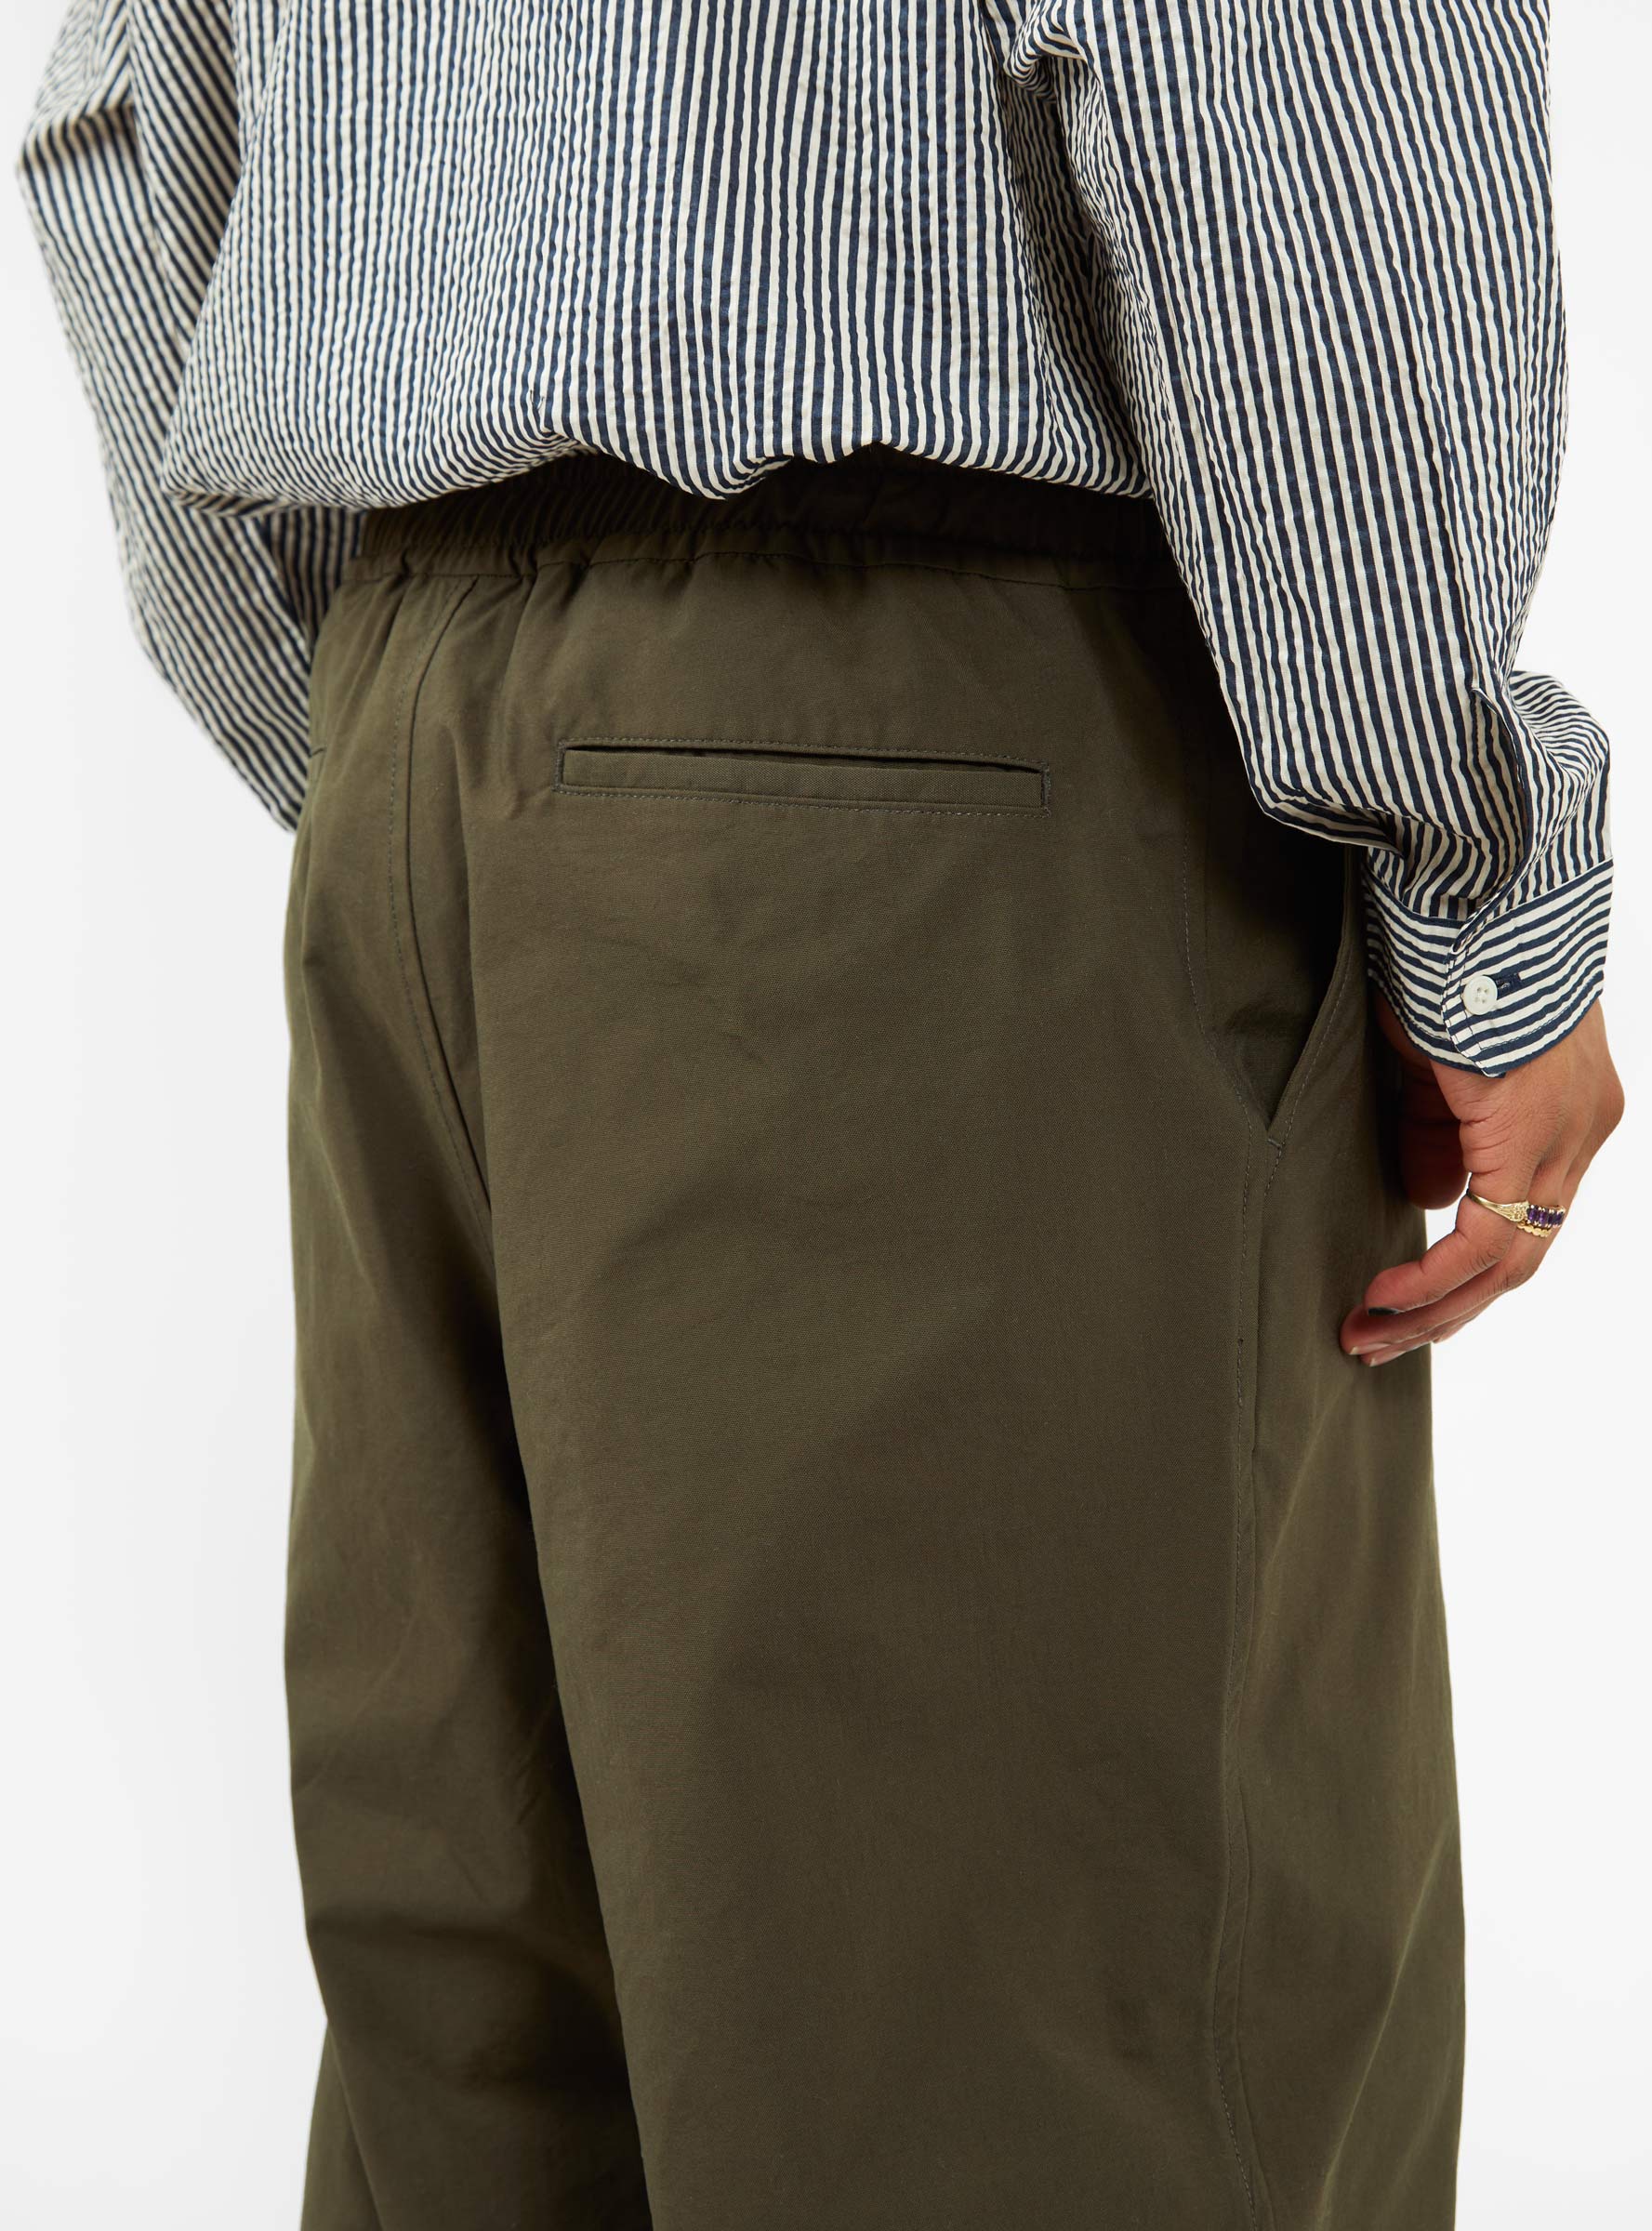 Tech Bush Trousers Khaki Brown by Daiwa Pier39 | Couverture & The Garbstore